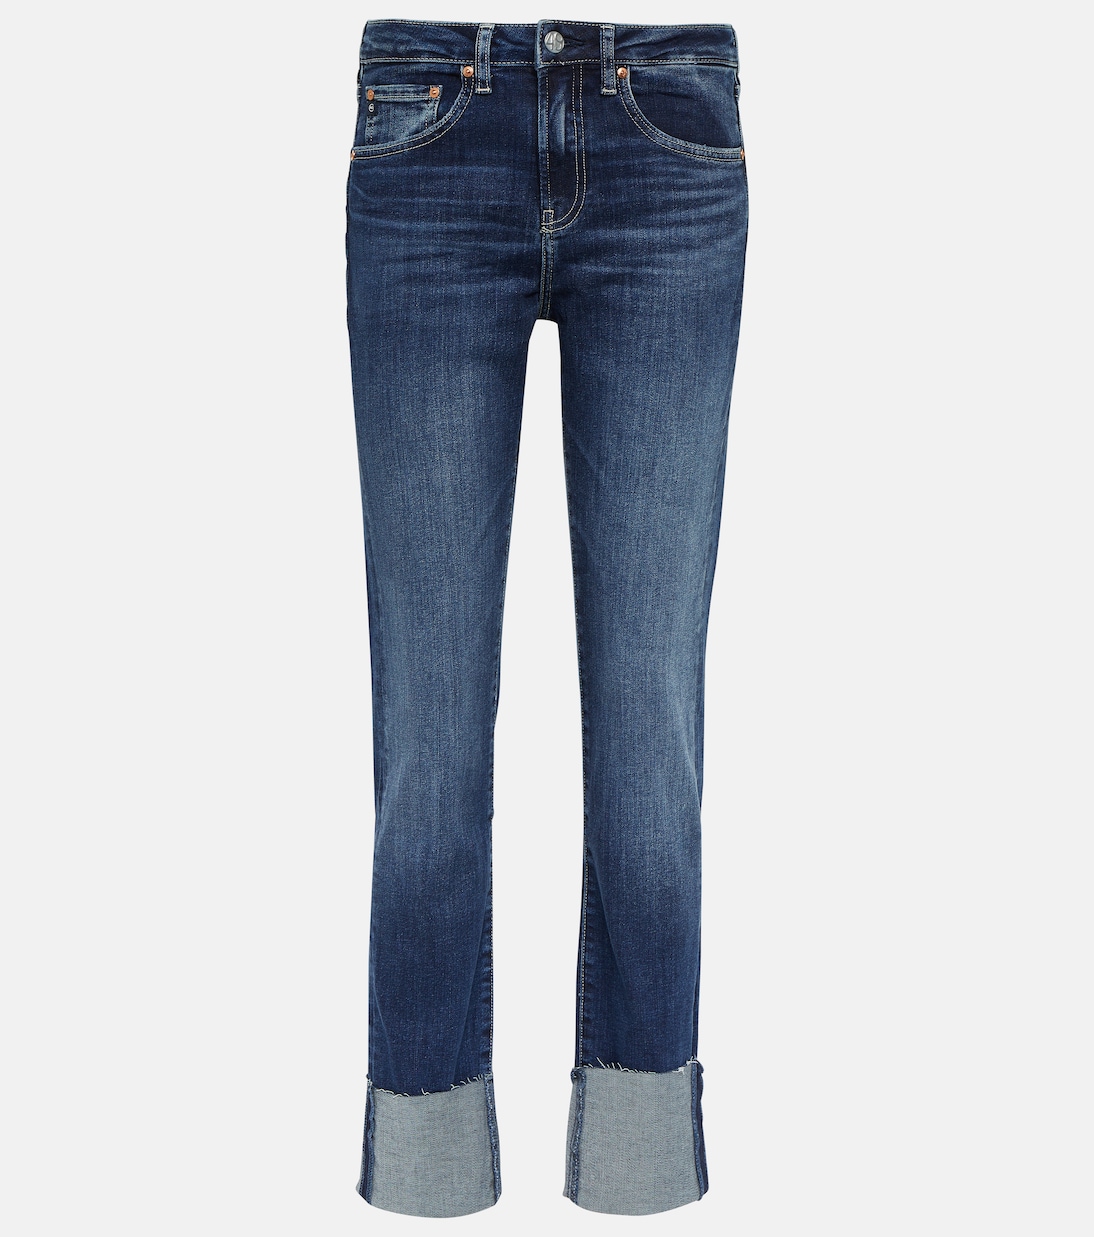 Узкие джинсы girlfriend со средней посадкой Ag Jeans, синий